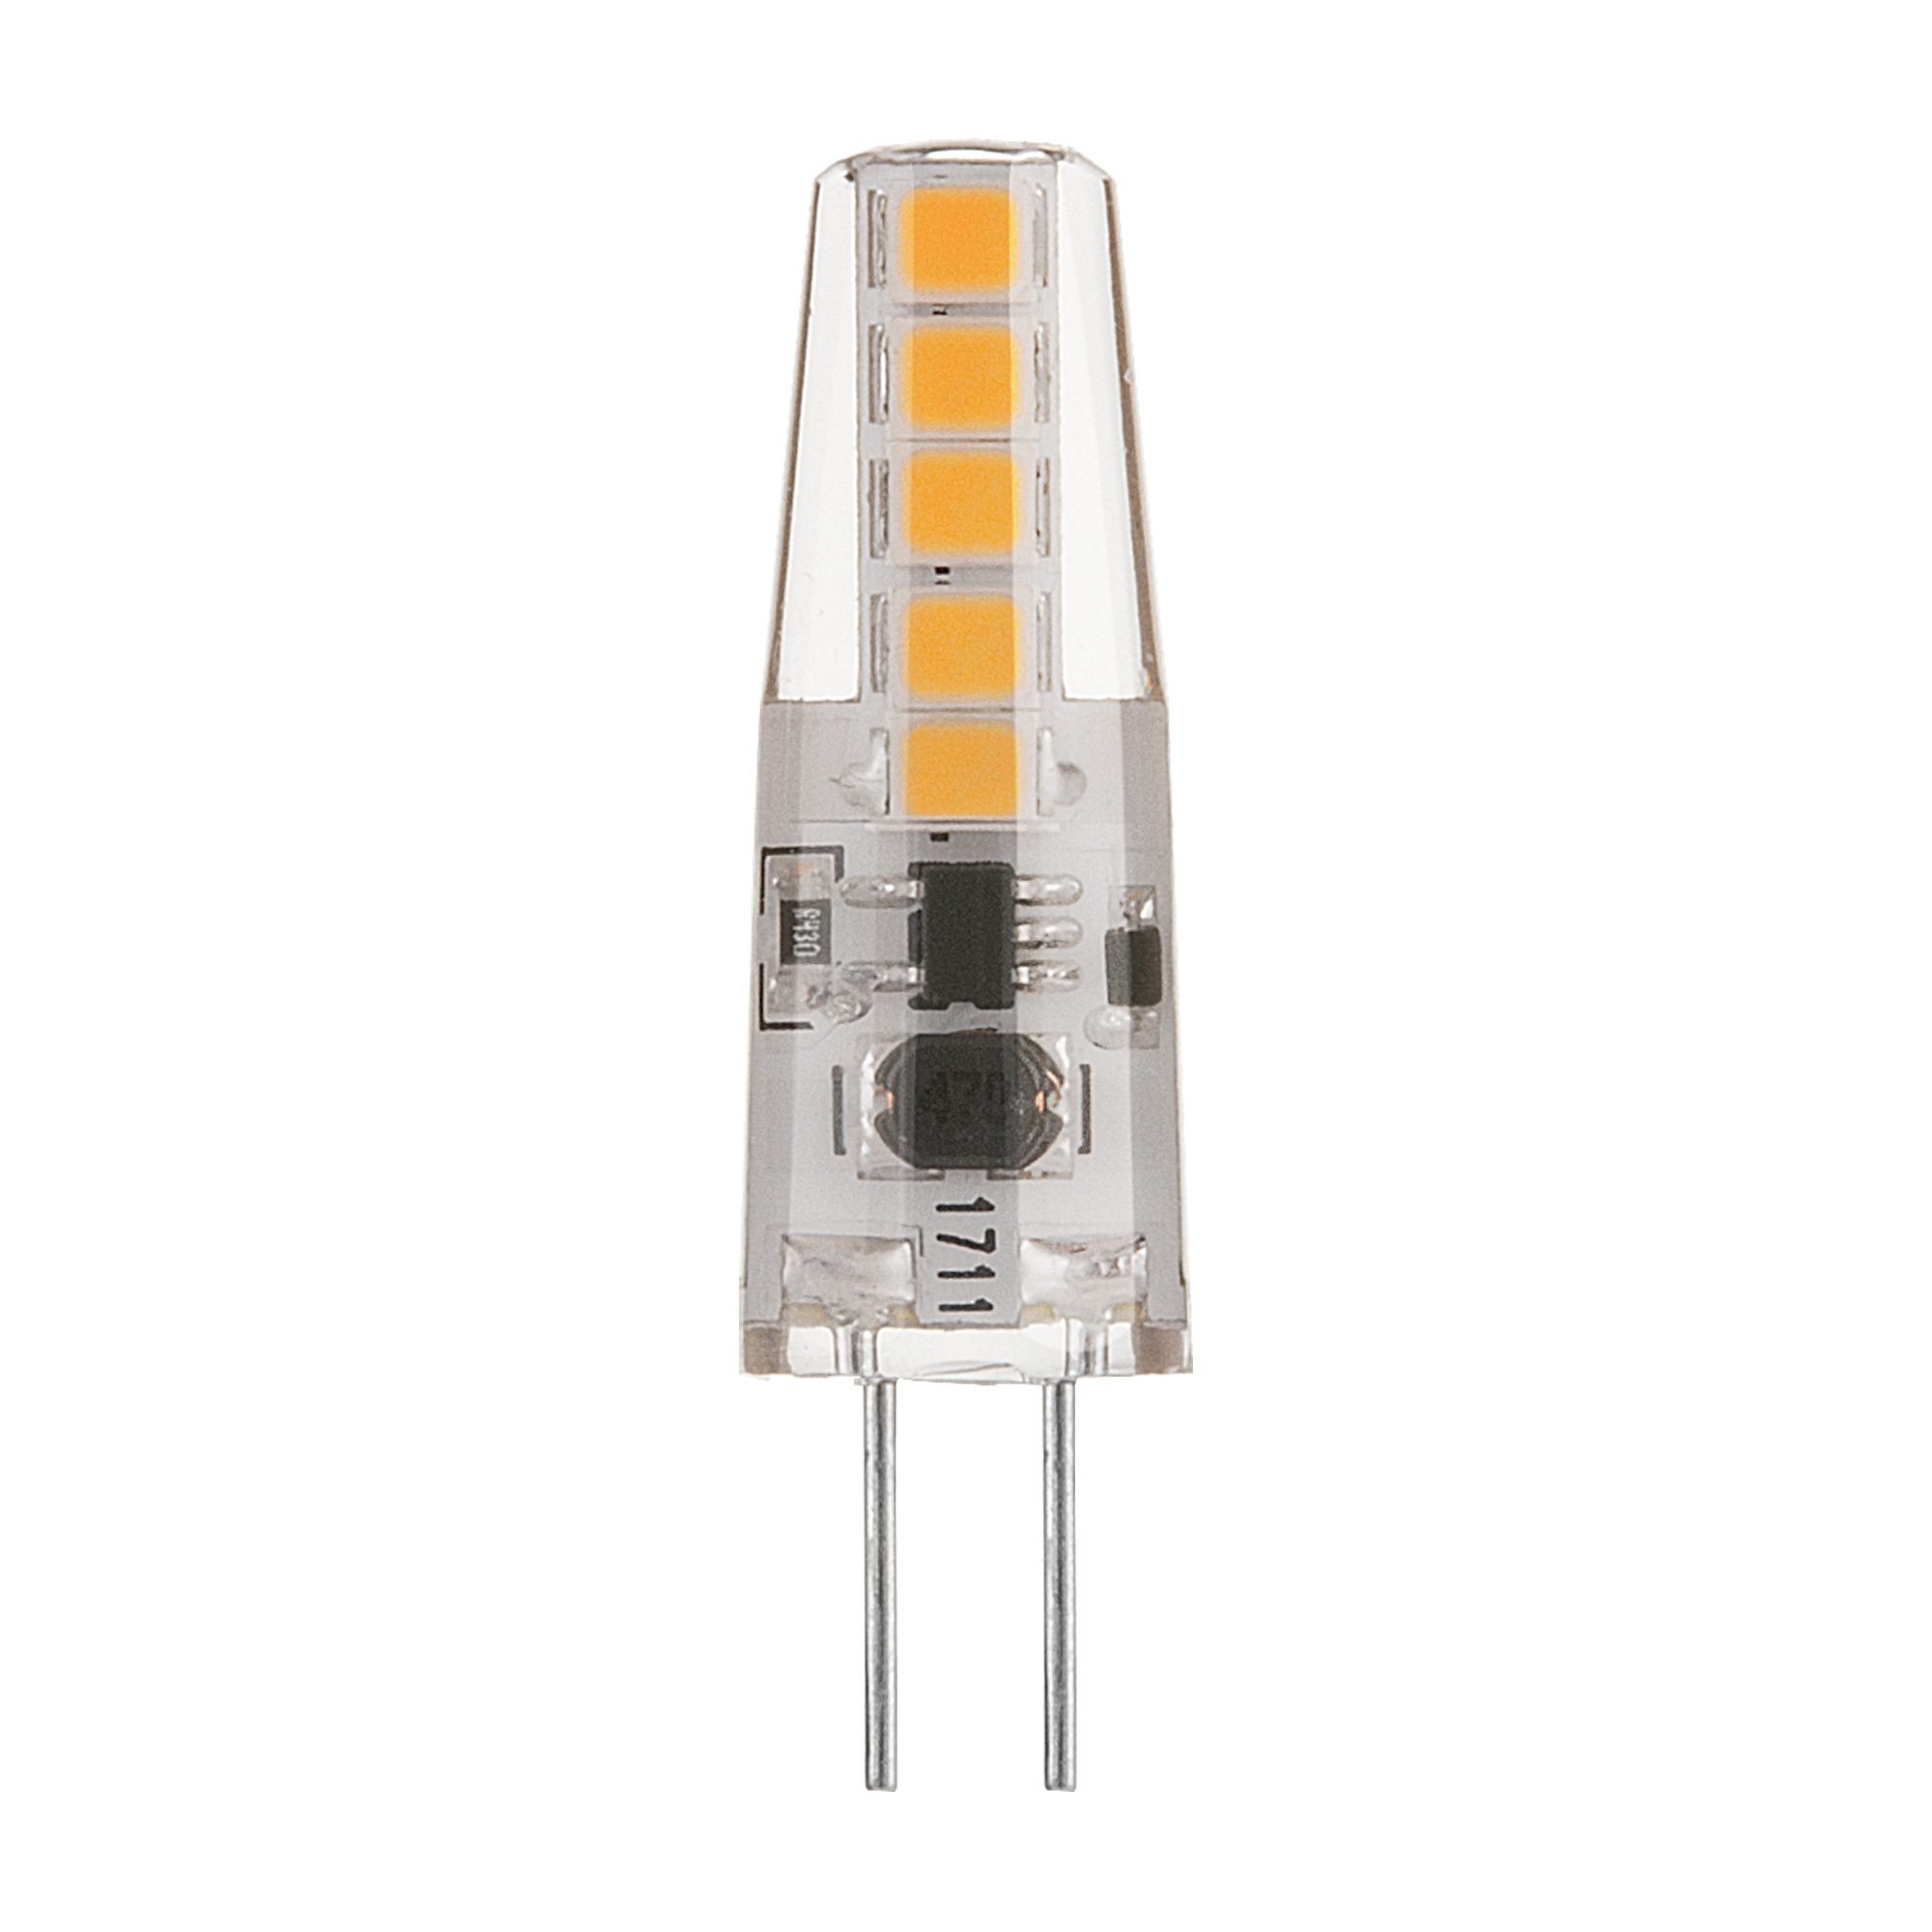 Лампа светодиодная Elektrostandard G4 JC 3 Вт 3300К теплый свет 12 В капсула (BLG411) лампа светодиодная camelion g4 5 вт 3000к теплый свет 12 в капсула led5 g4 jc nf 830 g4